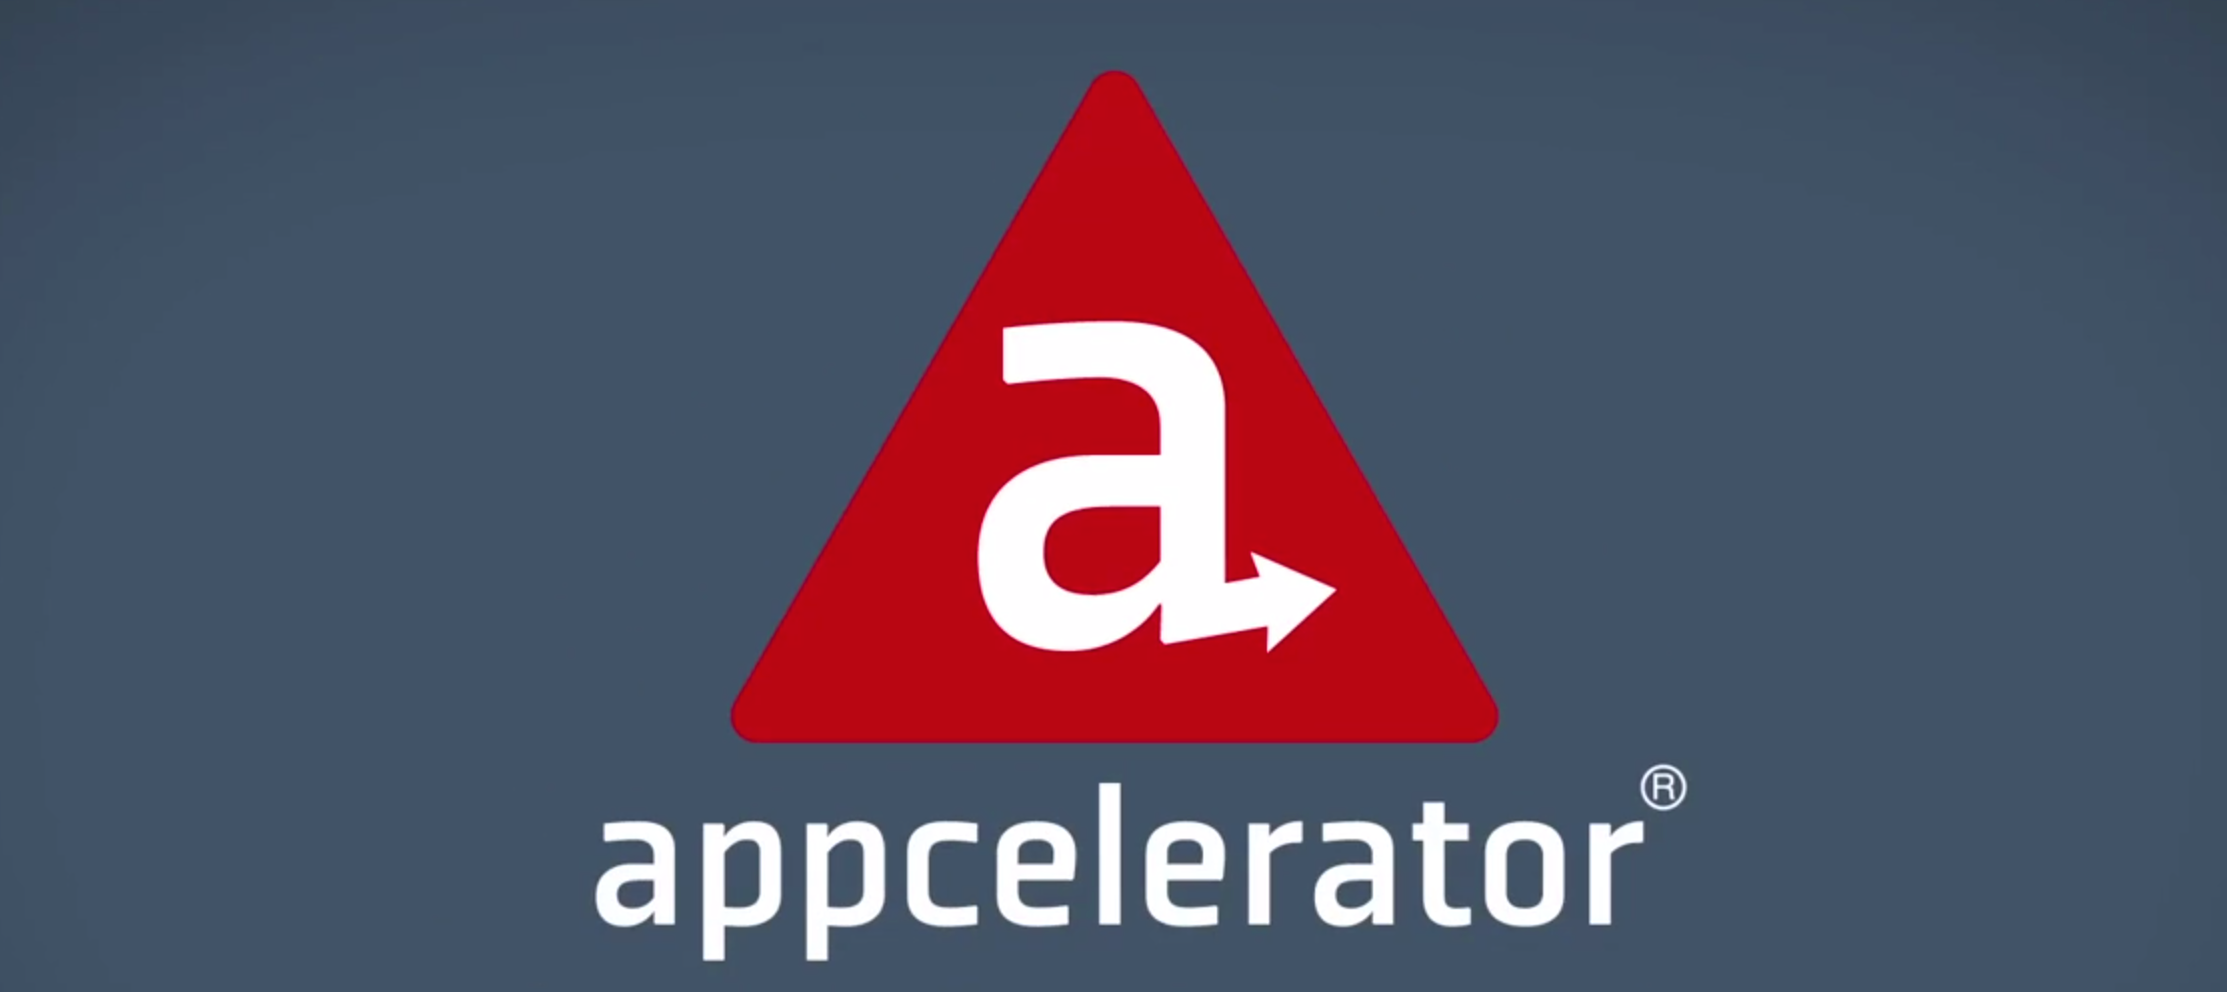 Top best mobile app development platforms: Appcelerator